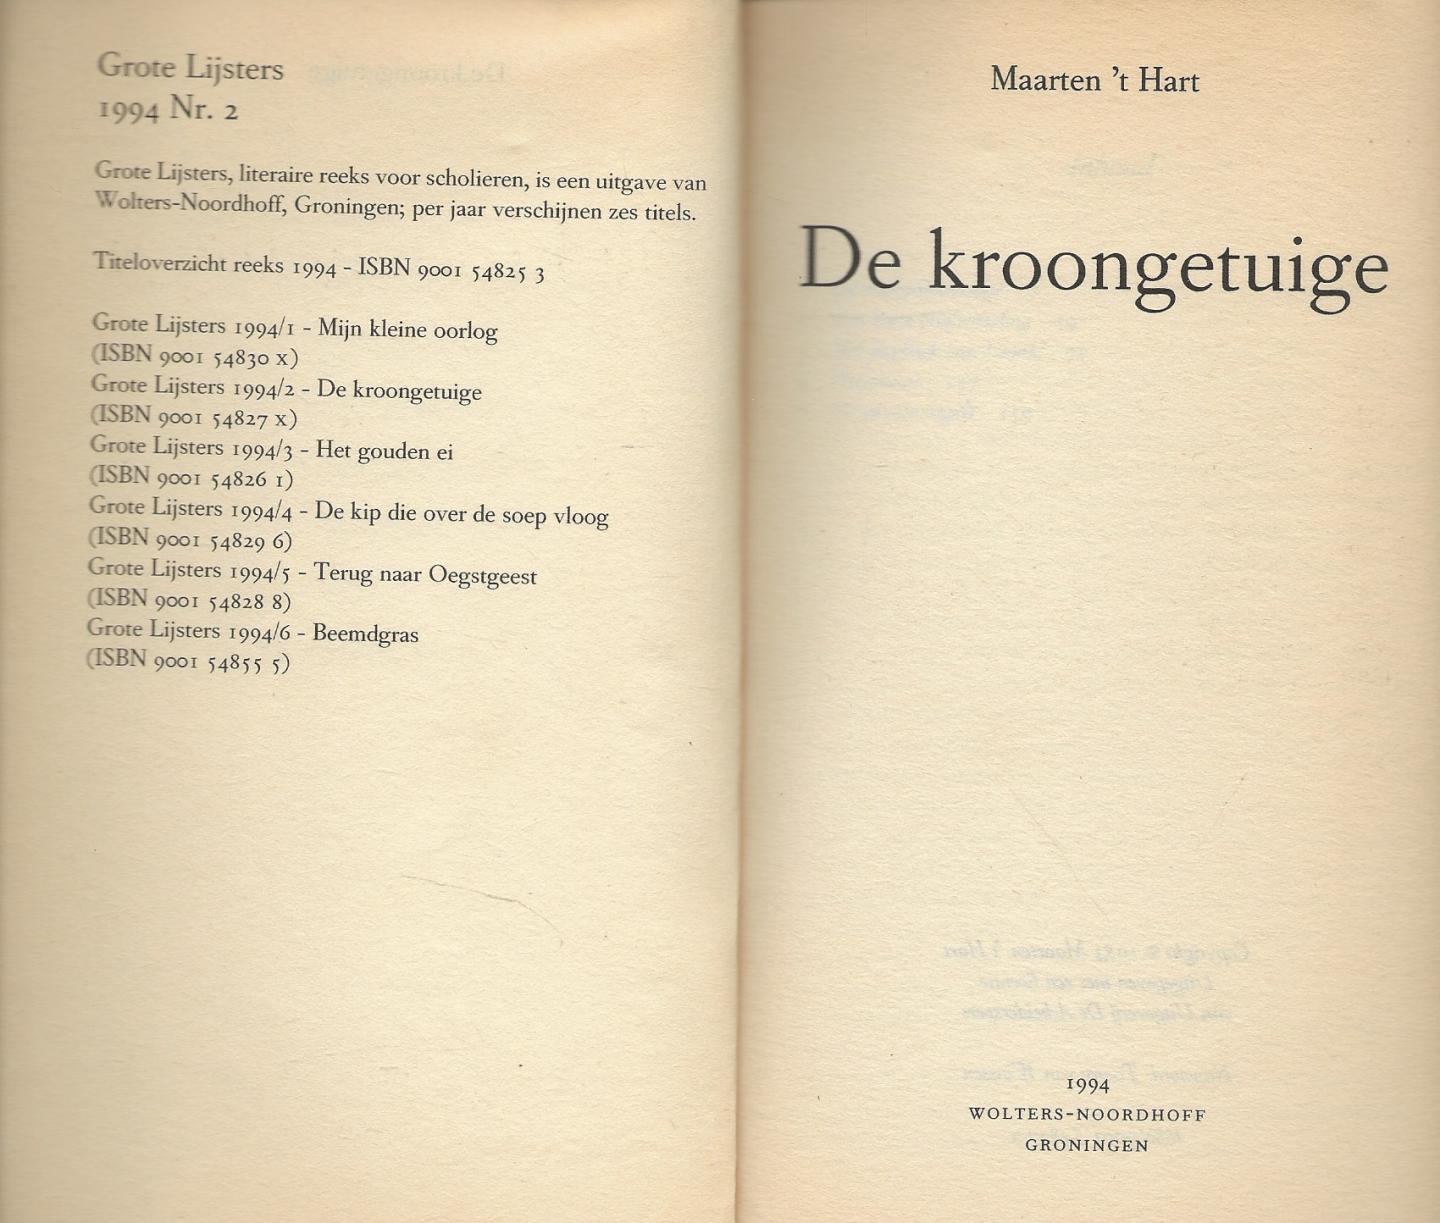 Hart (Maassluis, November 25, 1944), Maarten 't - De kroongetuige - literaire thriller/detective - Thomas Kuyper houdt zich als bioloog bezig met proeven op ratten. Op een nacht loopt hij een blauwtje bij Jenny, die hij na een kroegentocht thuis wil brengen